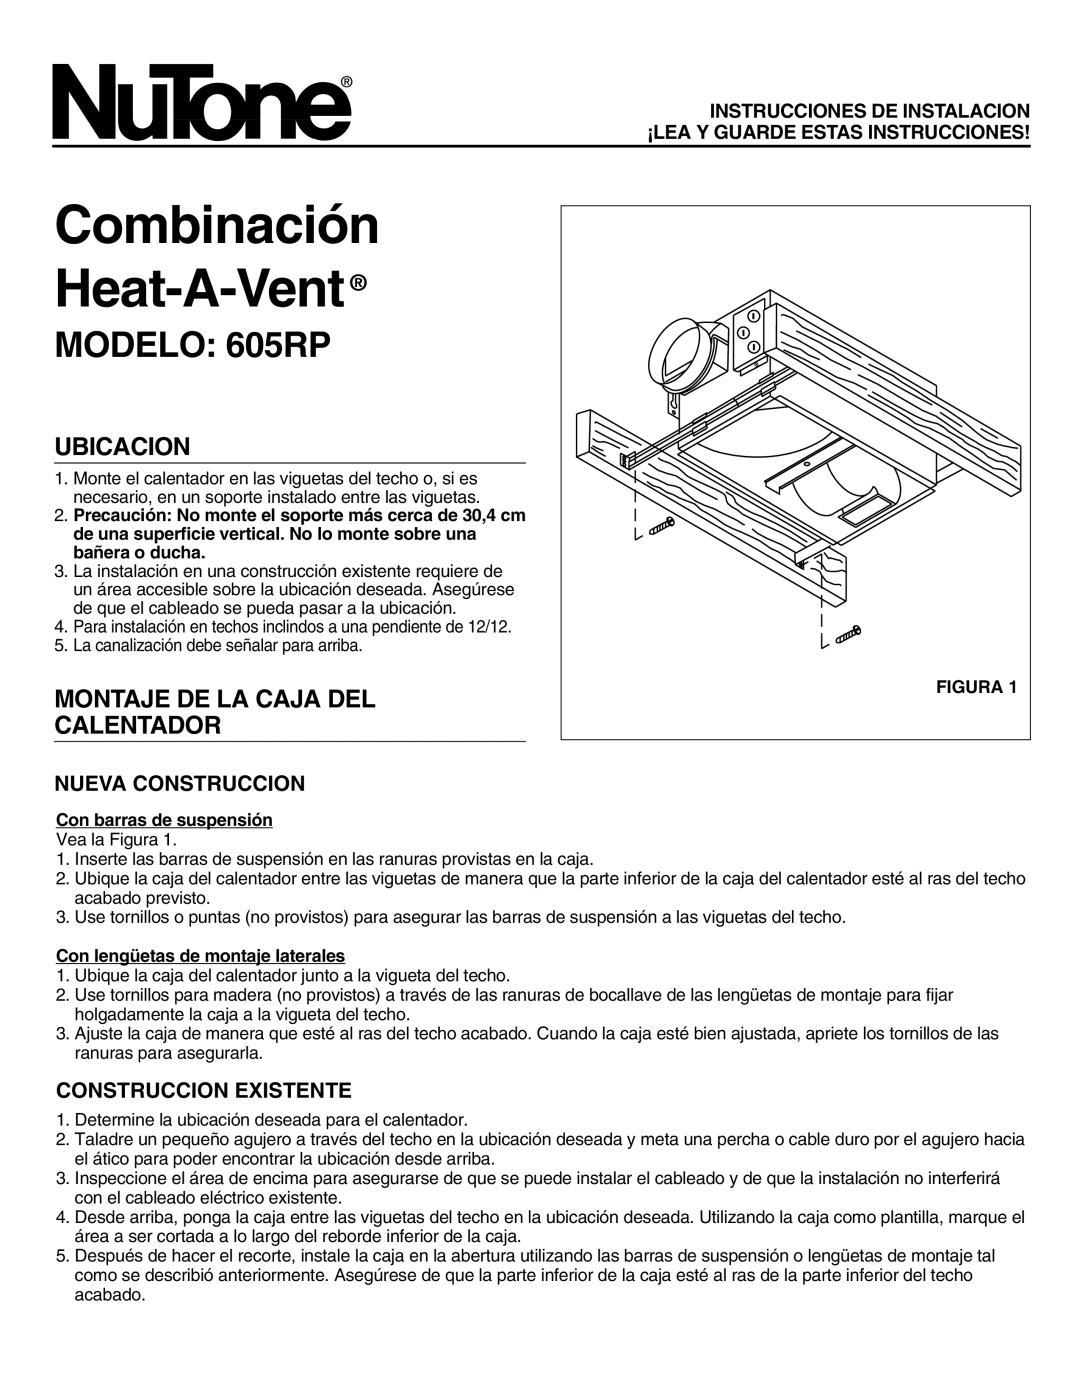 NuTone Combinación Heat-A-Vent, MODELO 605RP, Ubicacion, Montaje De La Caja Del Calentador, Nueva Construccion, Figura 